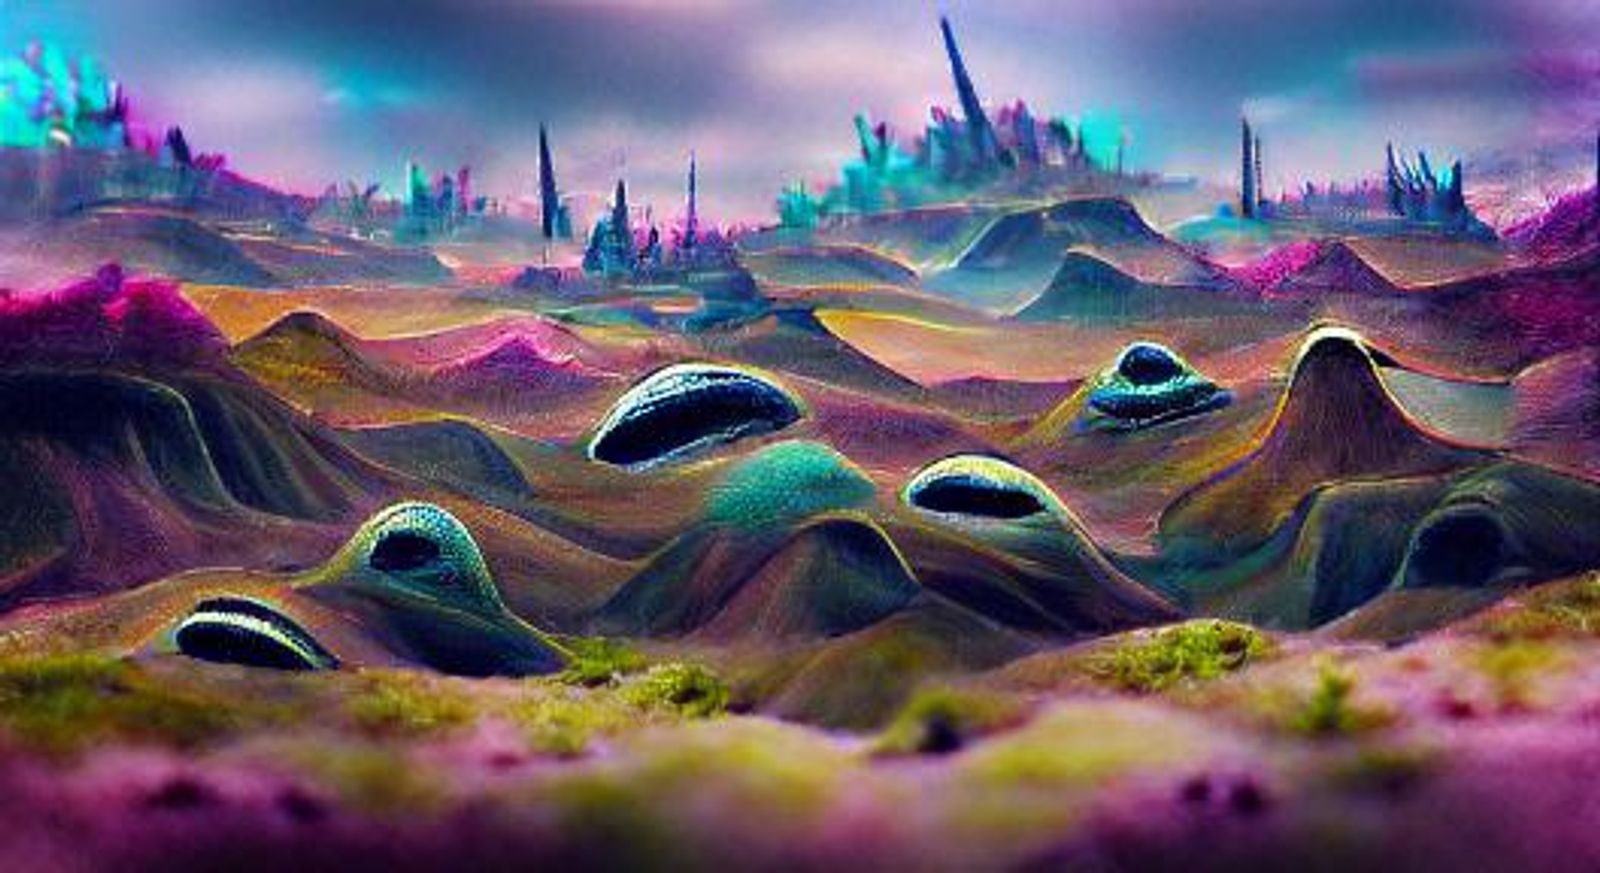 alien landscape painting